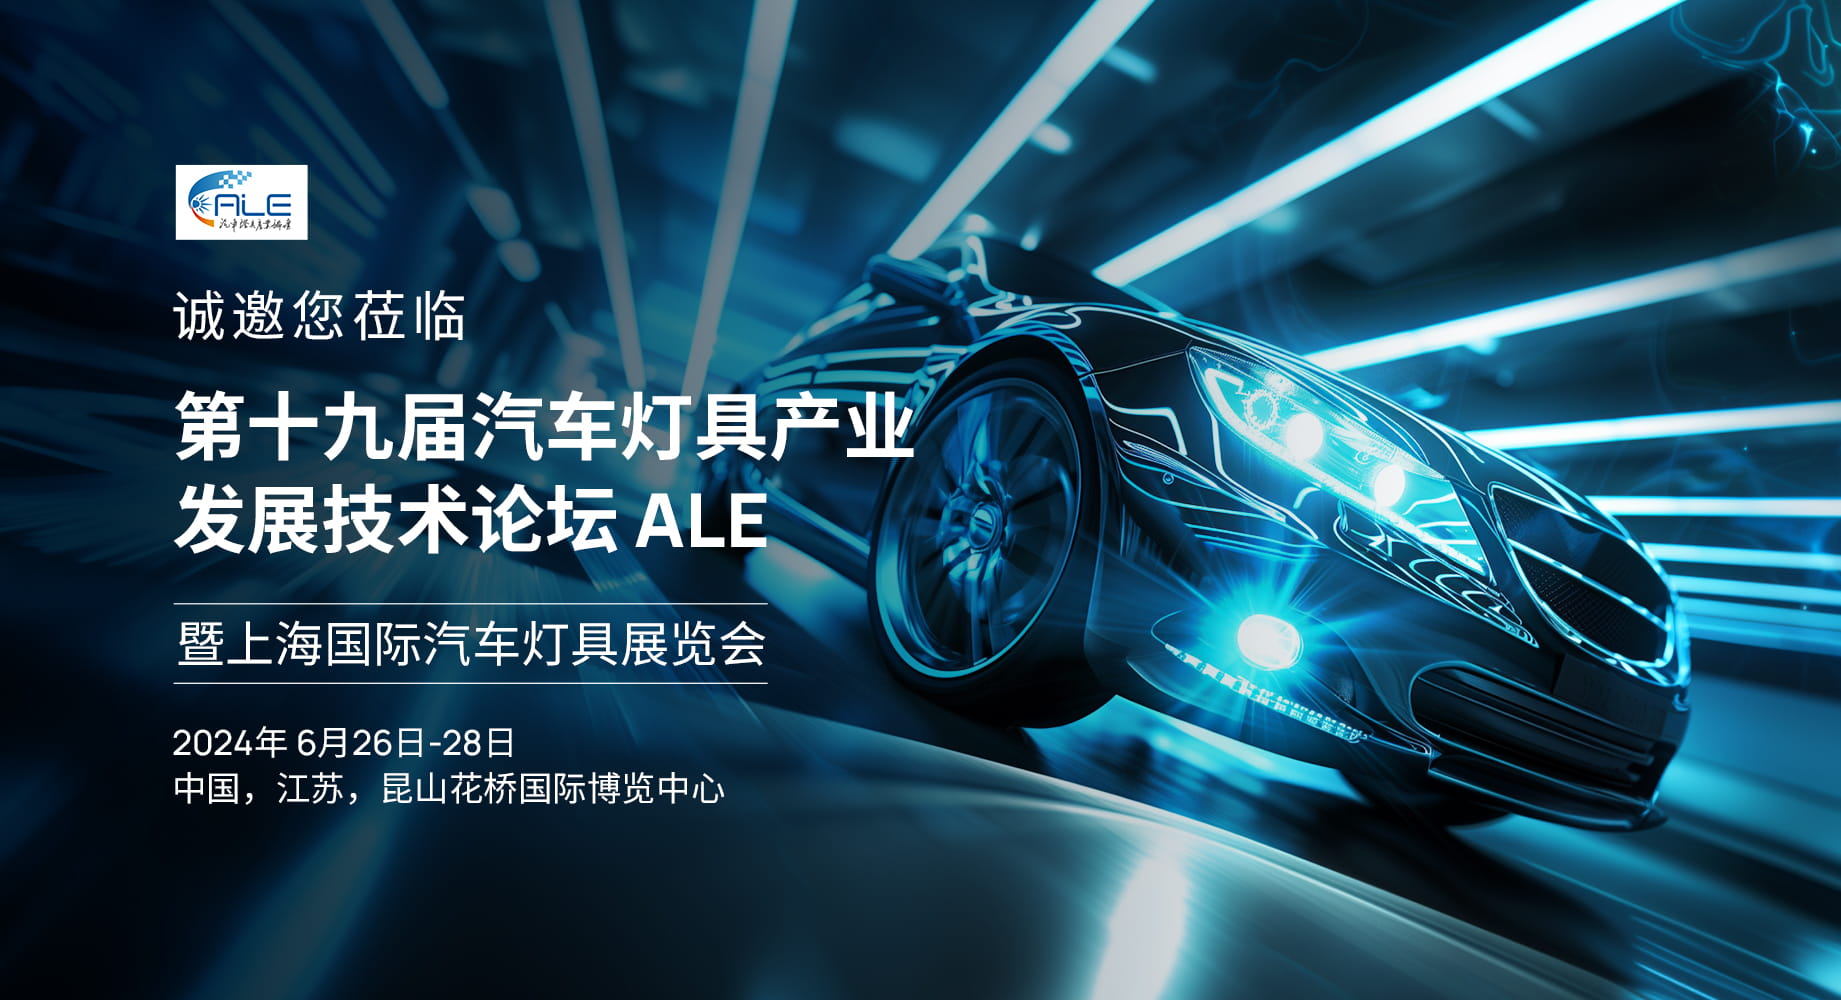 展会预告 | 炬光科技即将参加第19届汽车灯具产业发展技术论坛暨上海国际汽车灯具展览会（ALE）